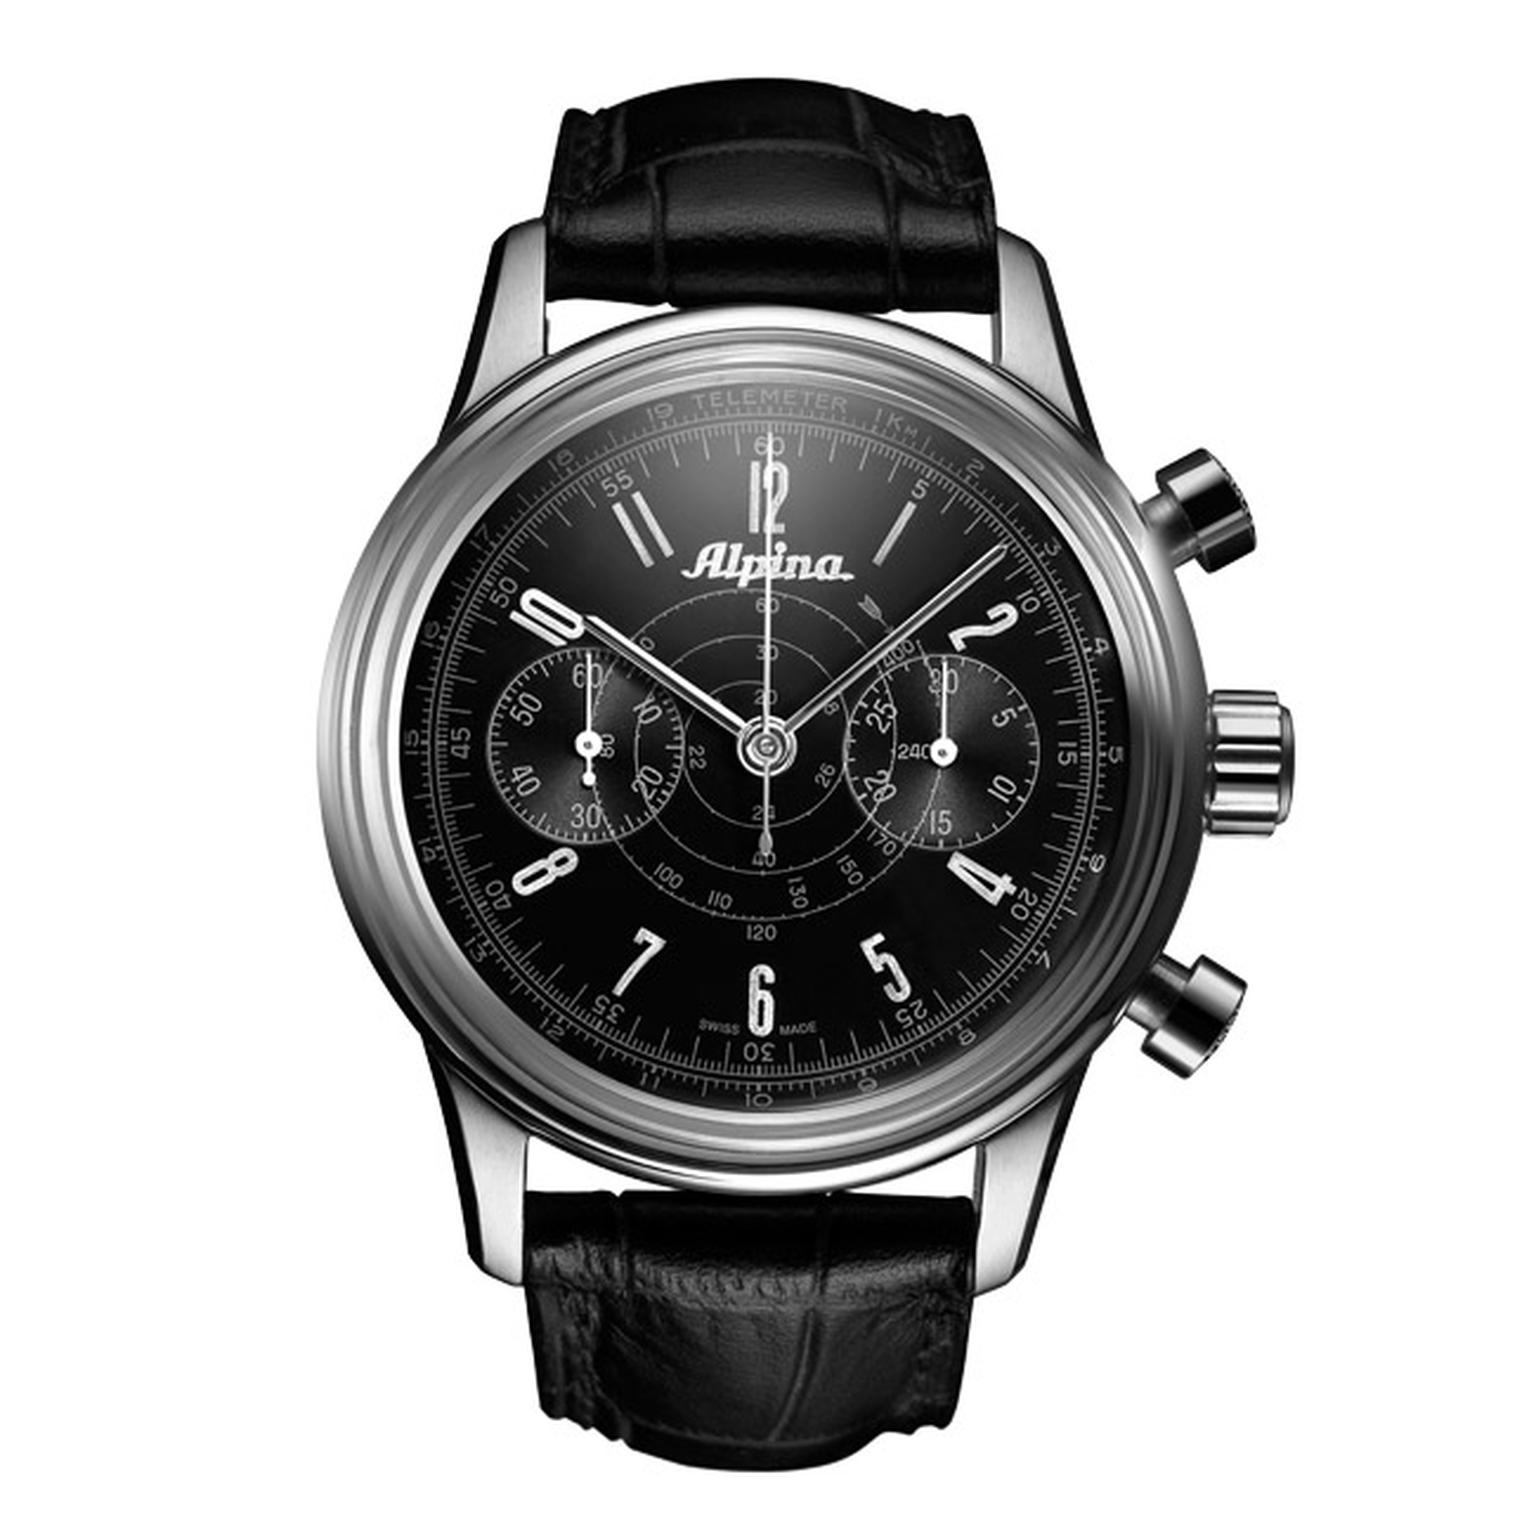 Alpina-Heritage-Pilot-Chronograph-watch-Main